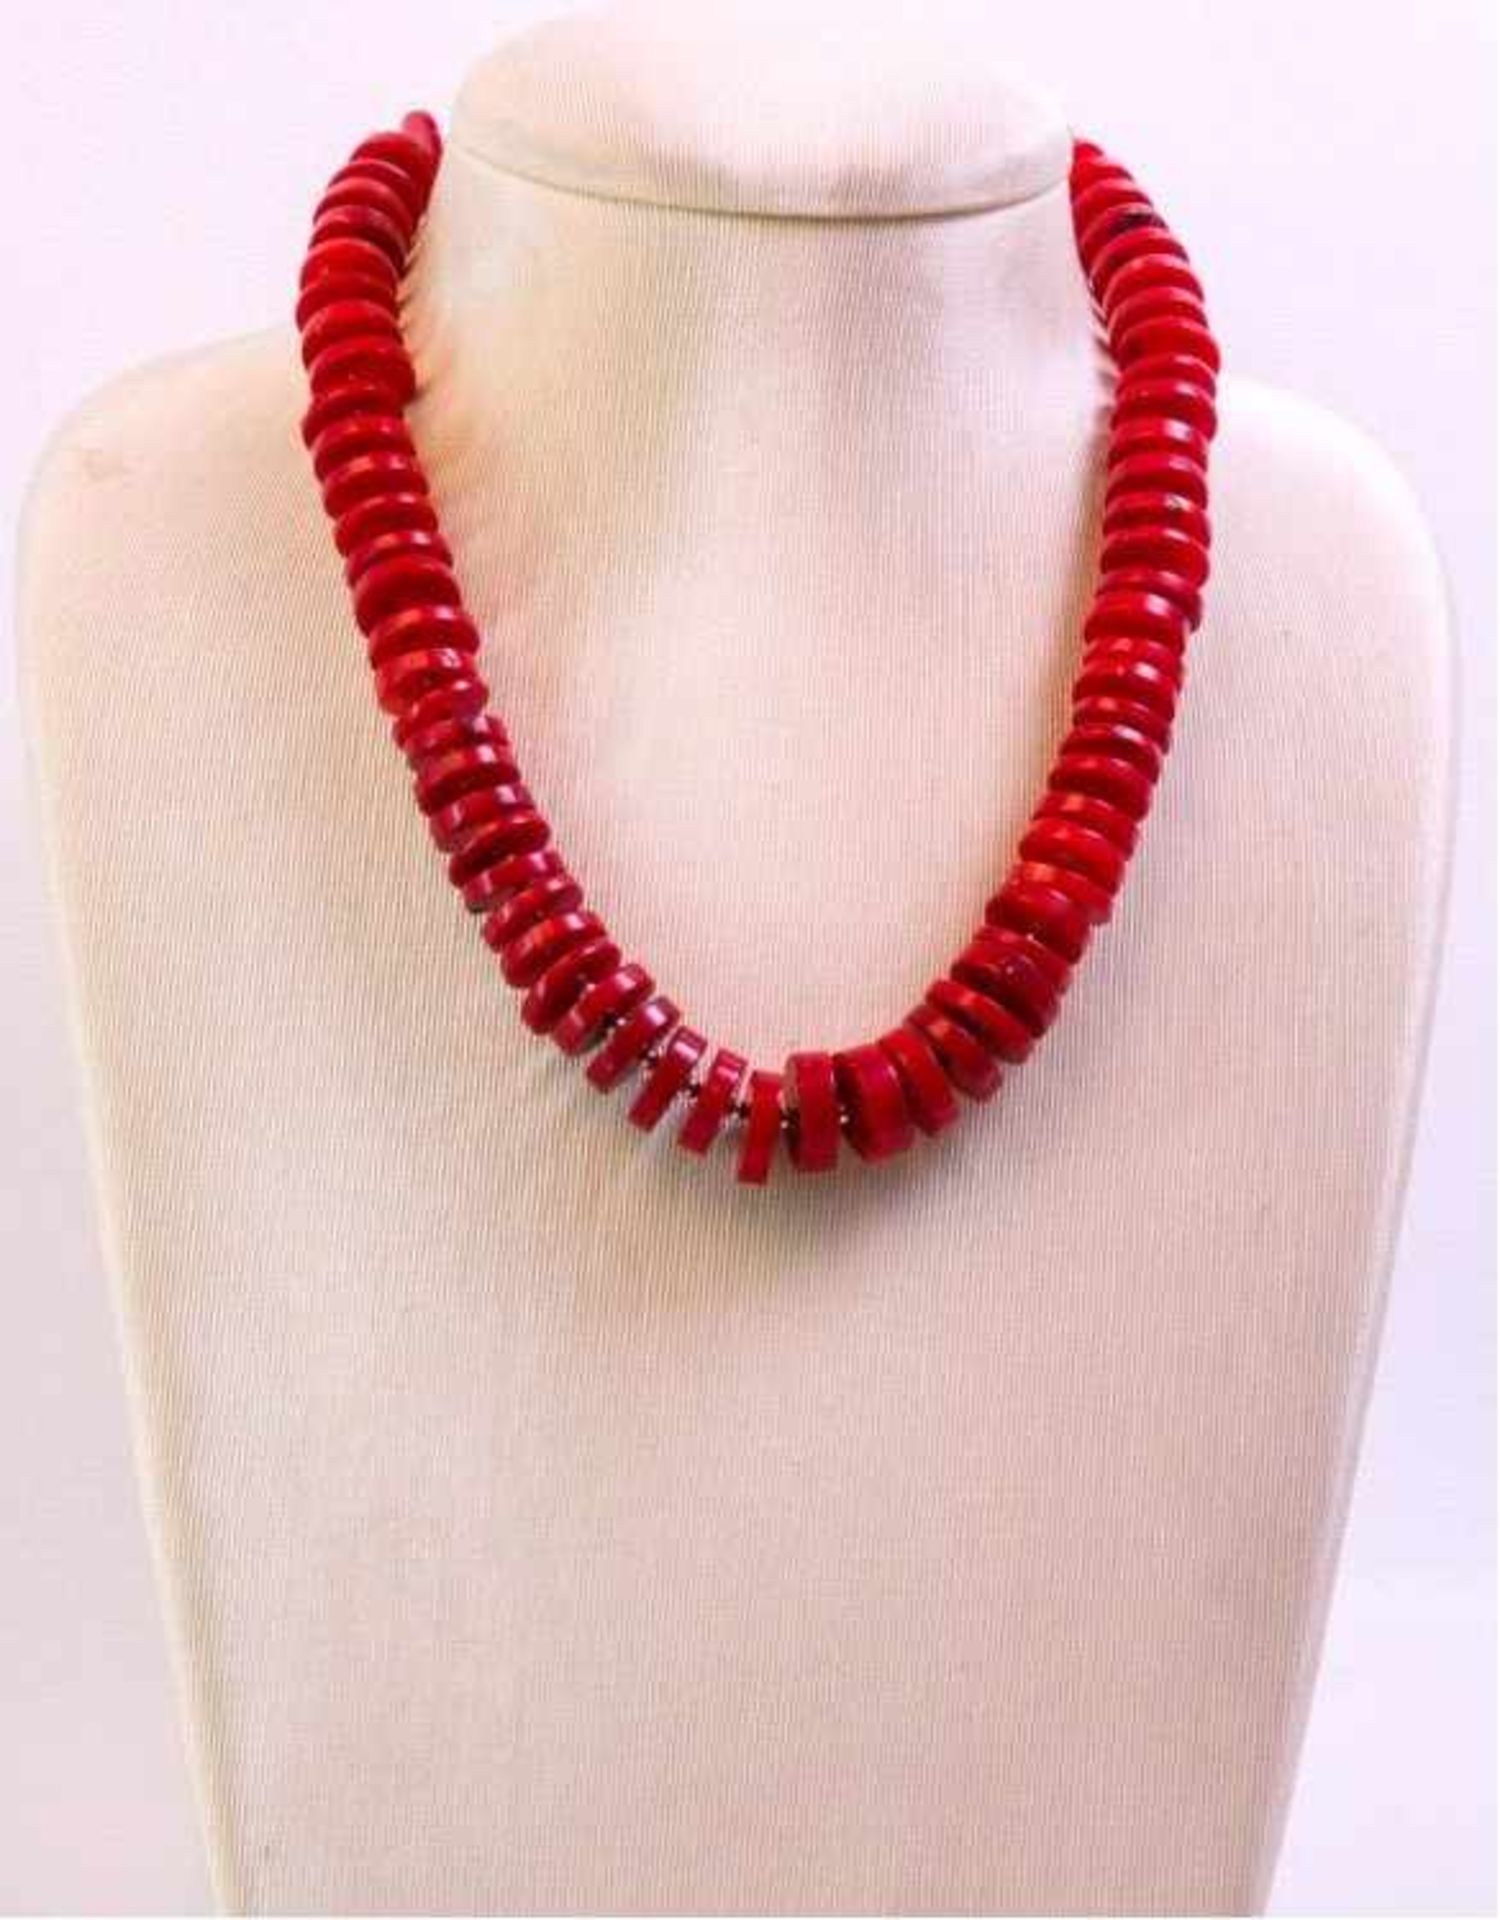 Halskette rote KoralleAus 76 Scheiben (ca D. 1,5 cm) zusammengesetzt, Schließe undGlieder aus